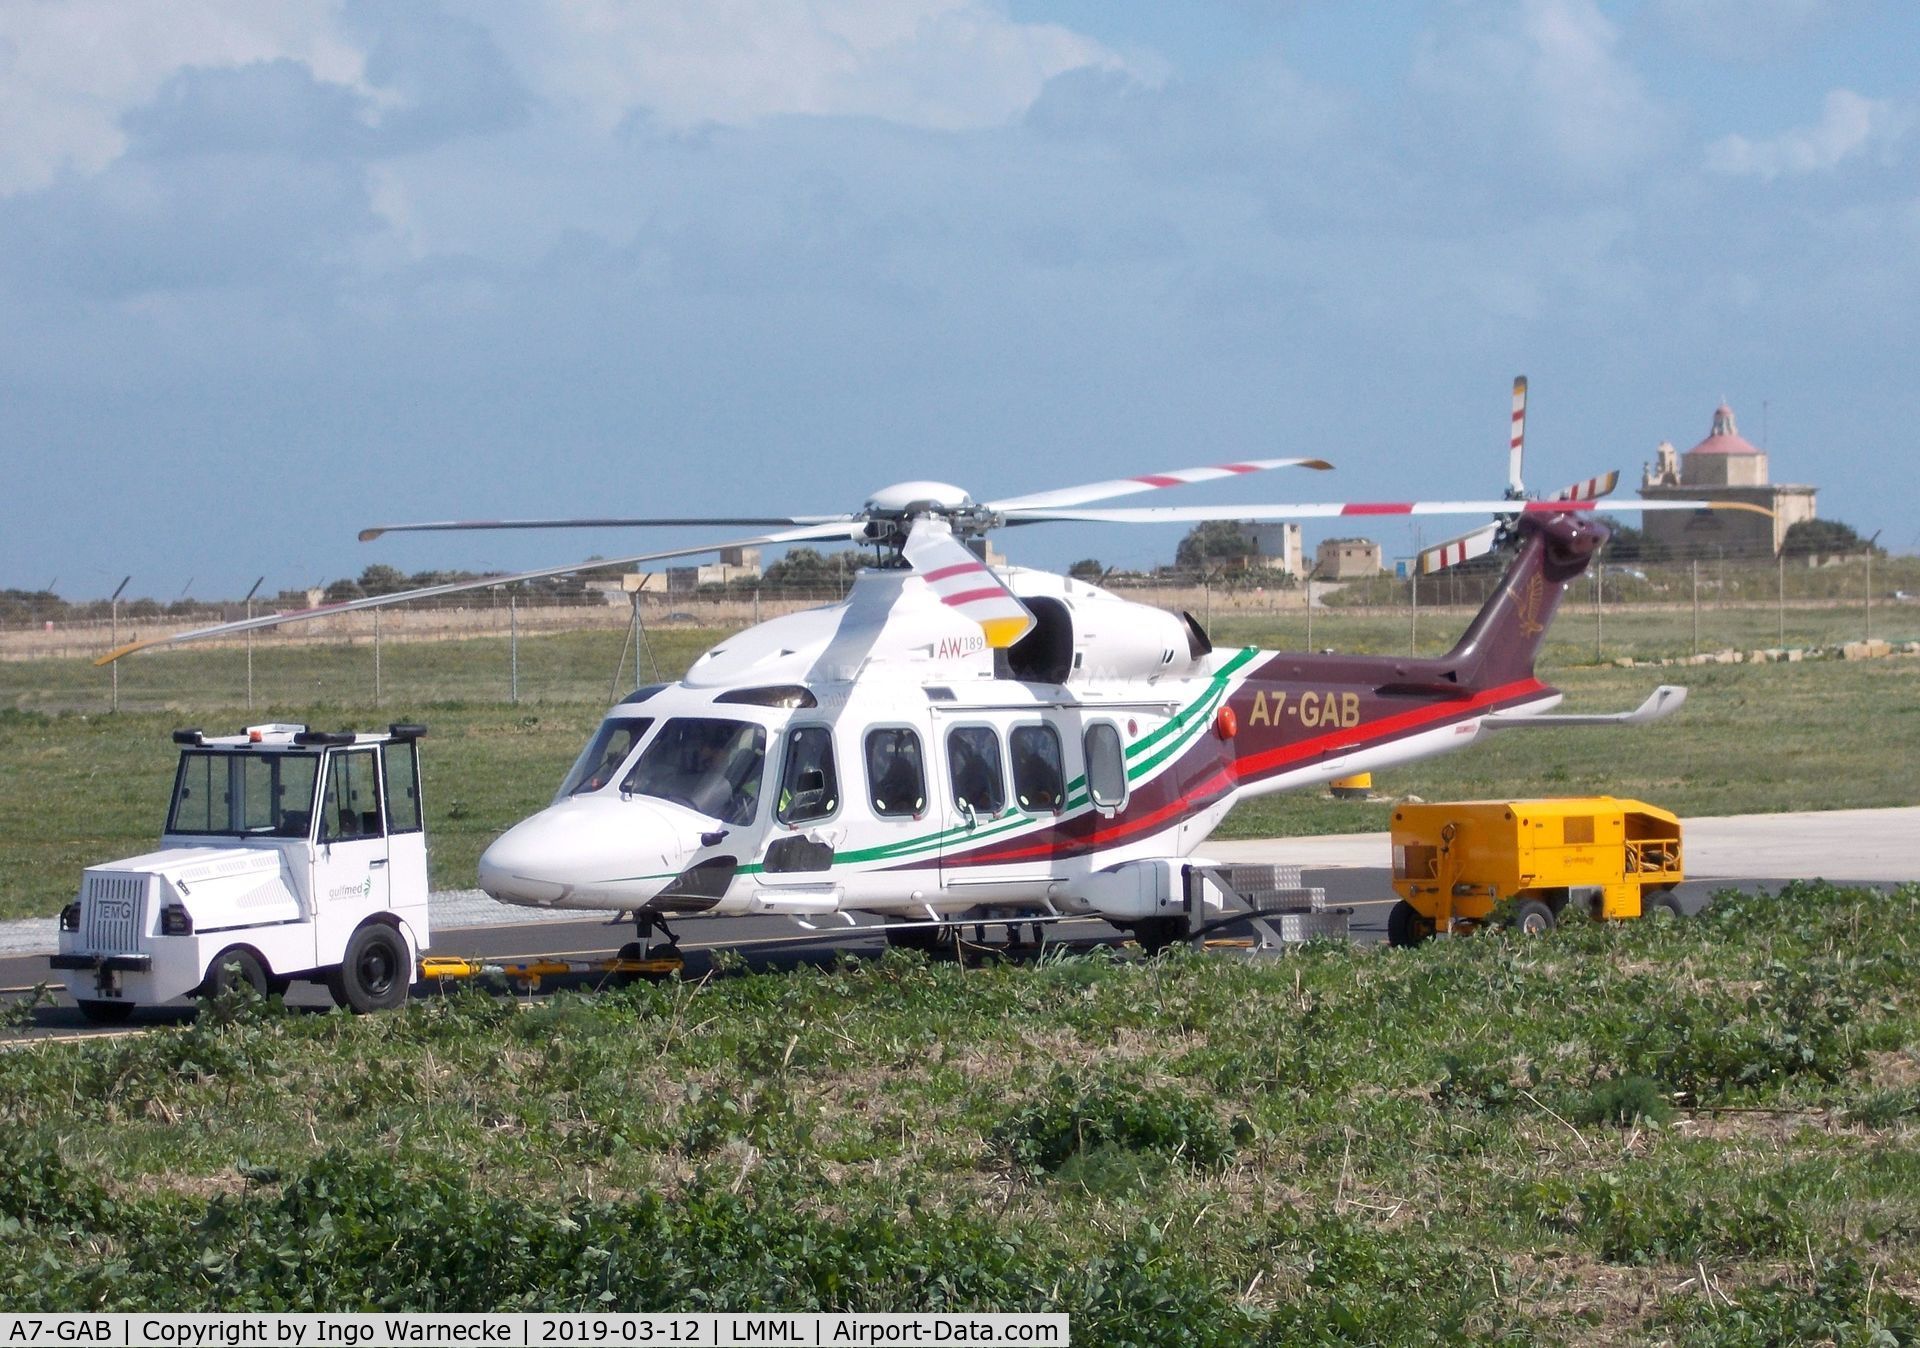 A7-GAB, 2014 AgustaWestland AW-189 C/N 49010, AgustaWestland AW189 of Gulf Helicopters, at Malta International Airport, Luqa